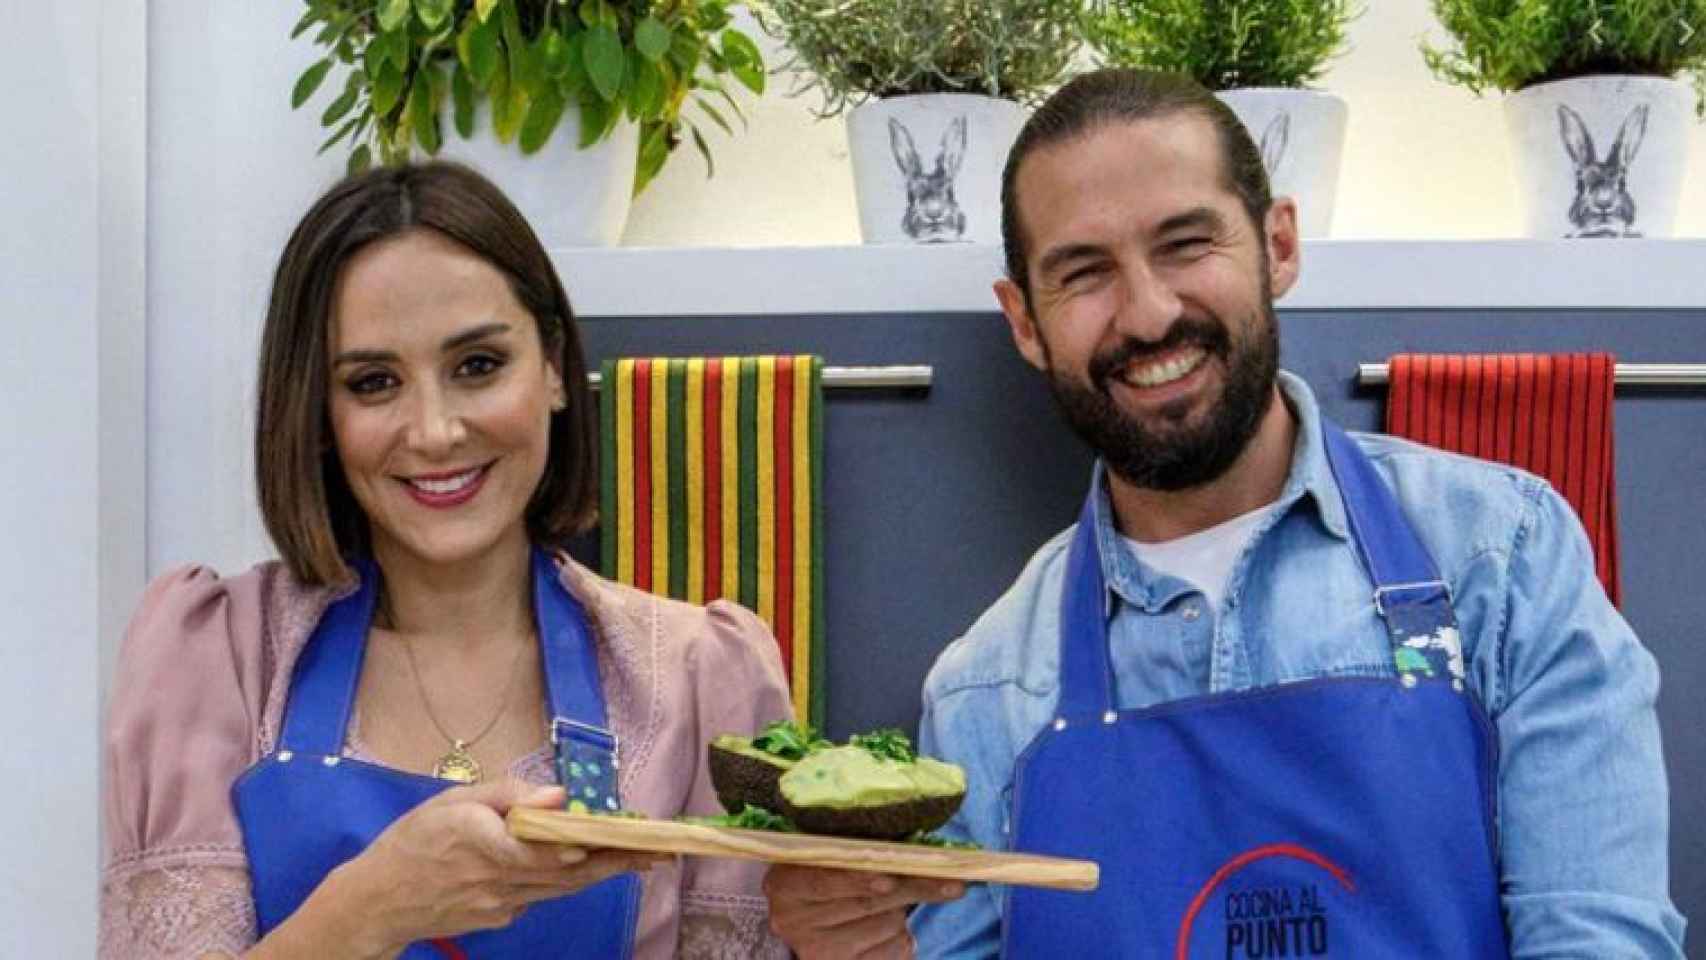 Tamara Falcó y Javier Peña en imagen promocional de 'Cocina al punto'.